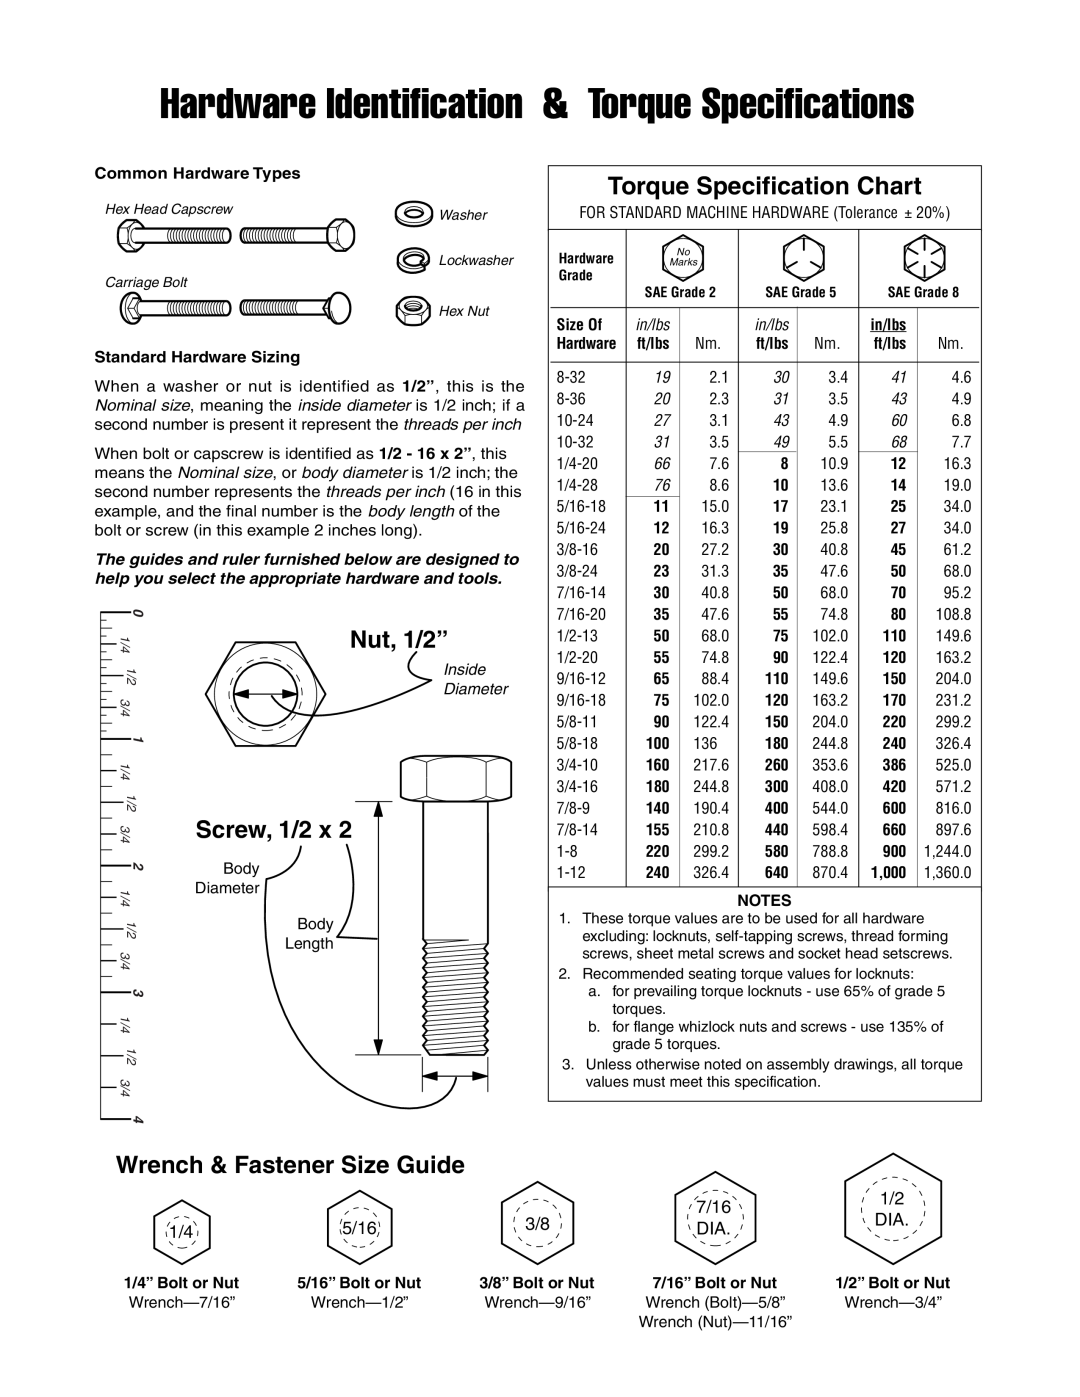 Briggs & Stratton 5900709 7/16, 5/16, Hardware Identification & Torque Specifications, Torque Specification Chart, Inside 